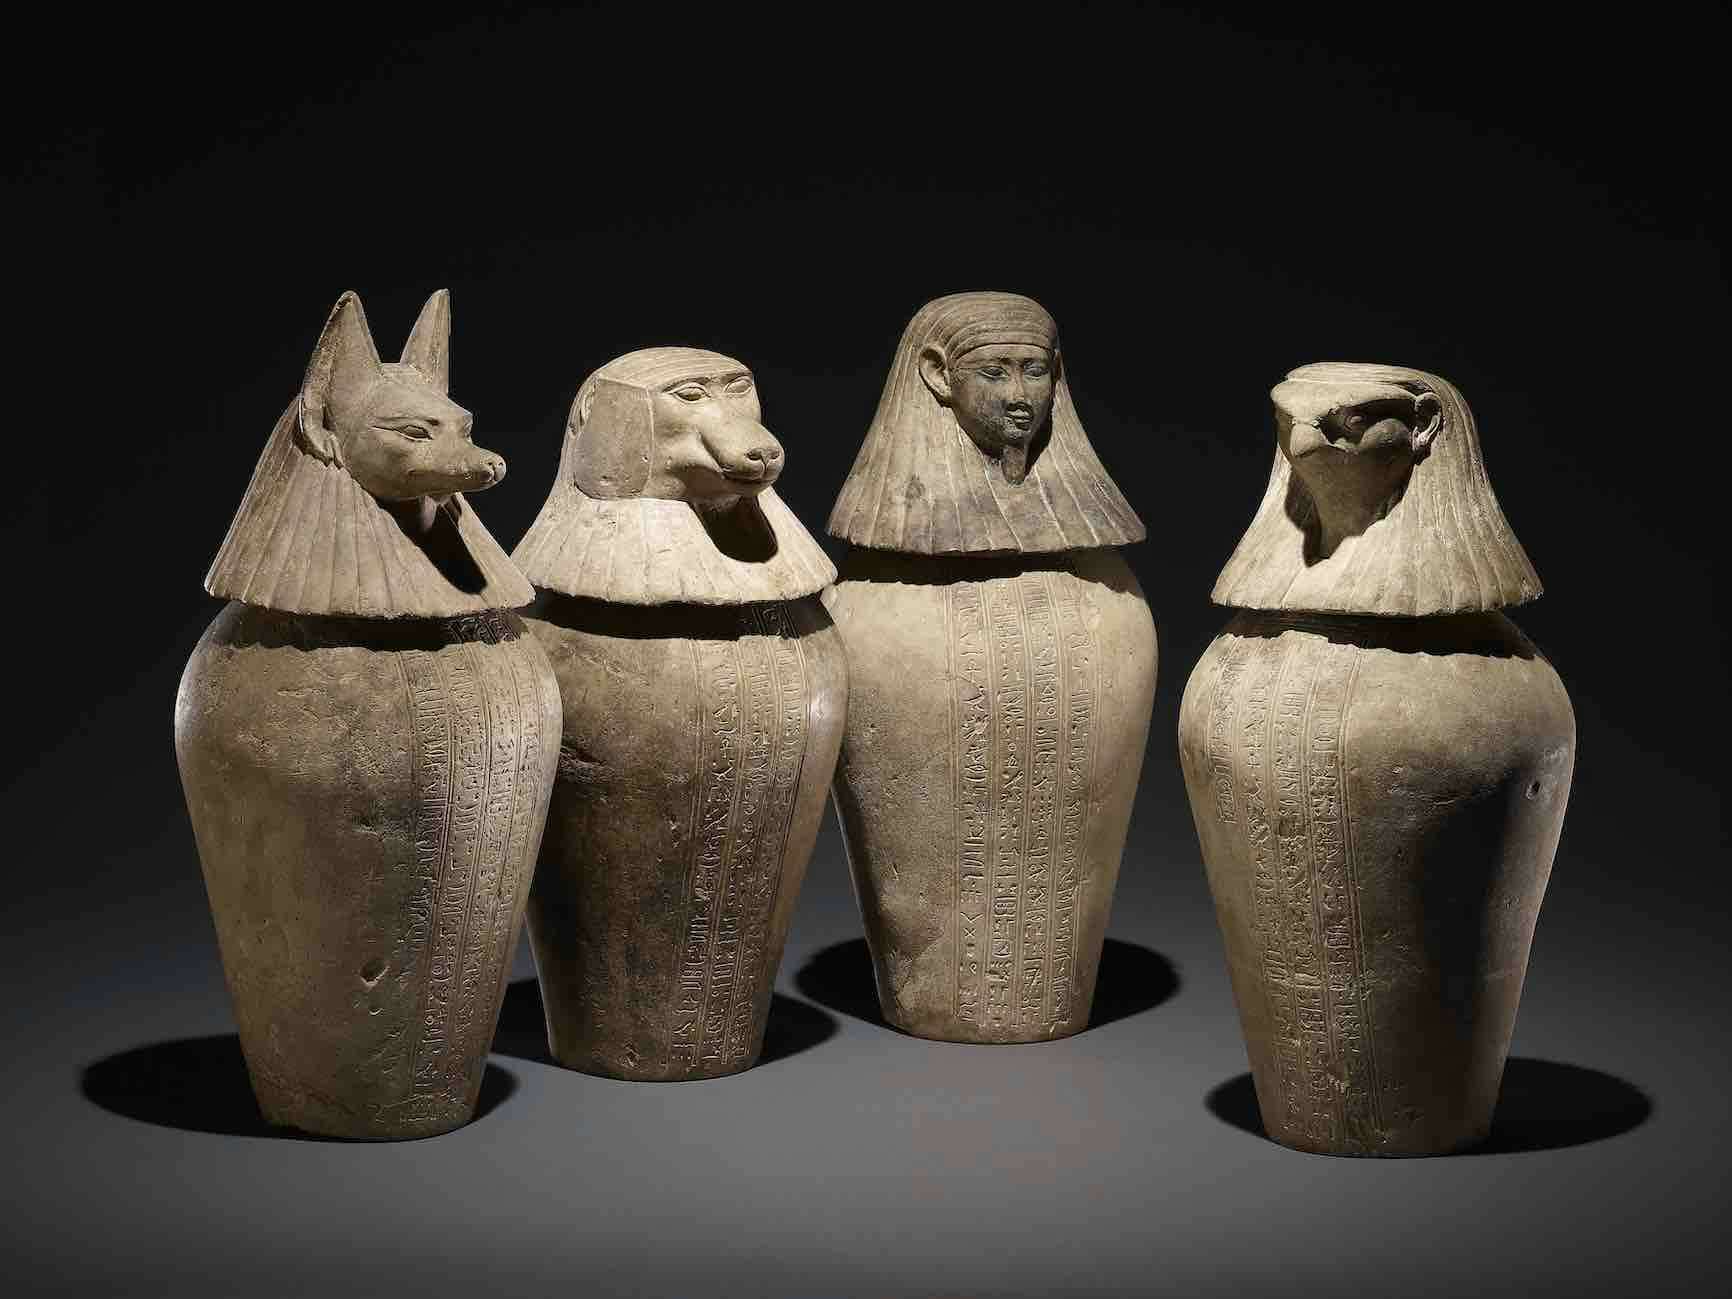 高品質豊富な〓海洋堂〓 大英博物館 古代エジプトの遺産 ネコのミイラ/カノポス壺/スフィンクス等 全15種 未開封フルコンプセット@THE BRITISH MUSEUM エスニック